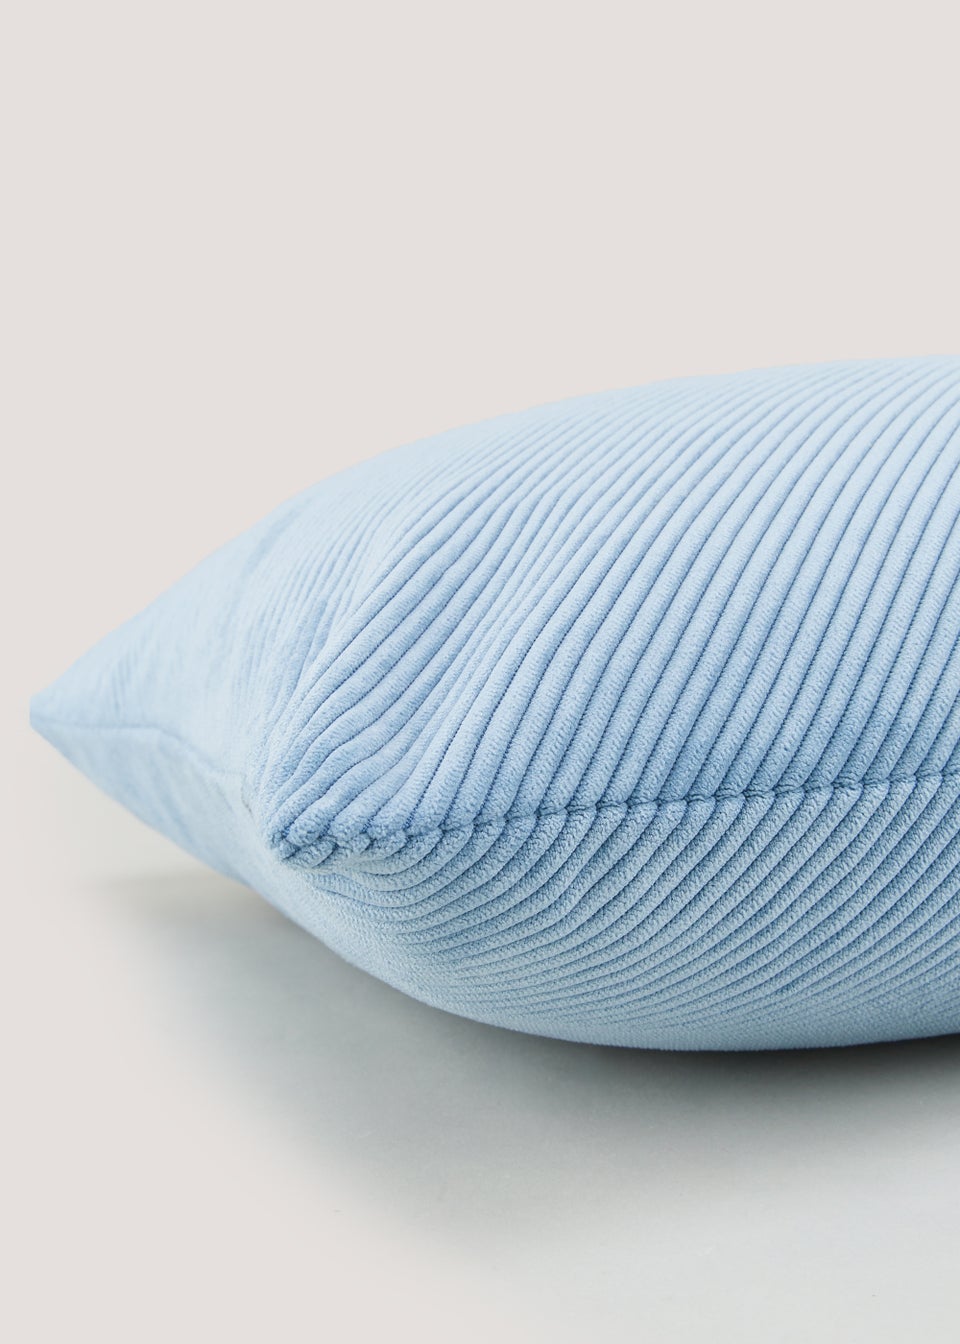 Blue Cord Cushion (43cm x 43cm)